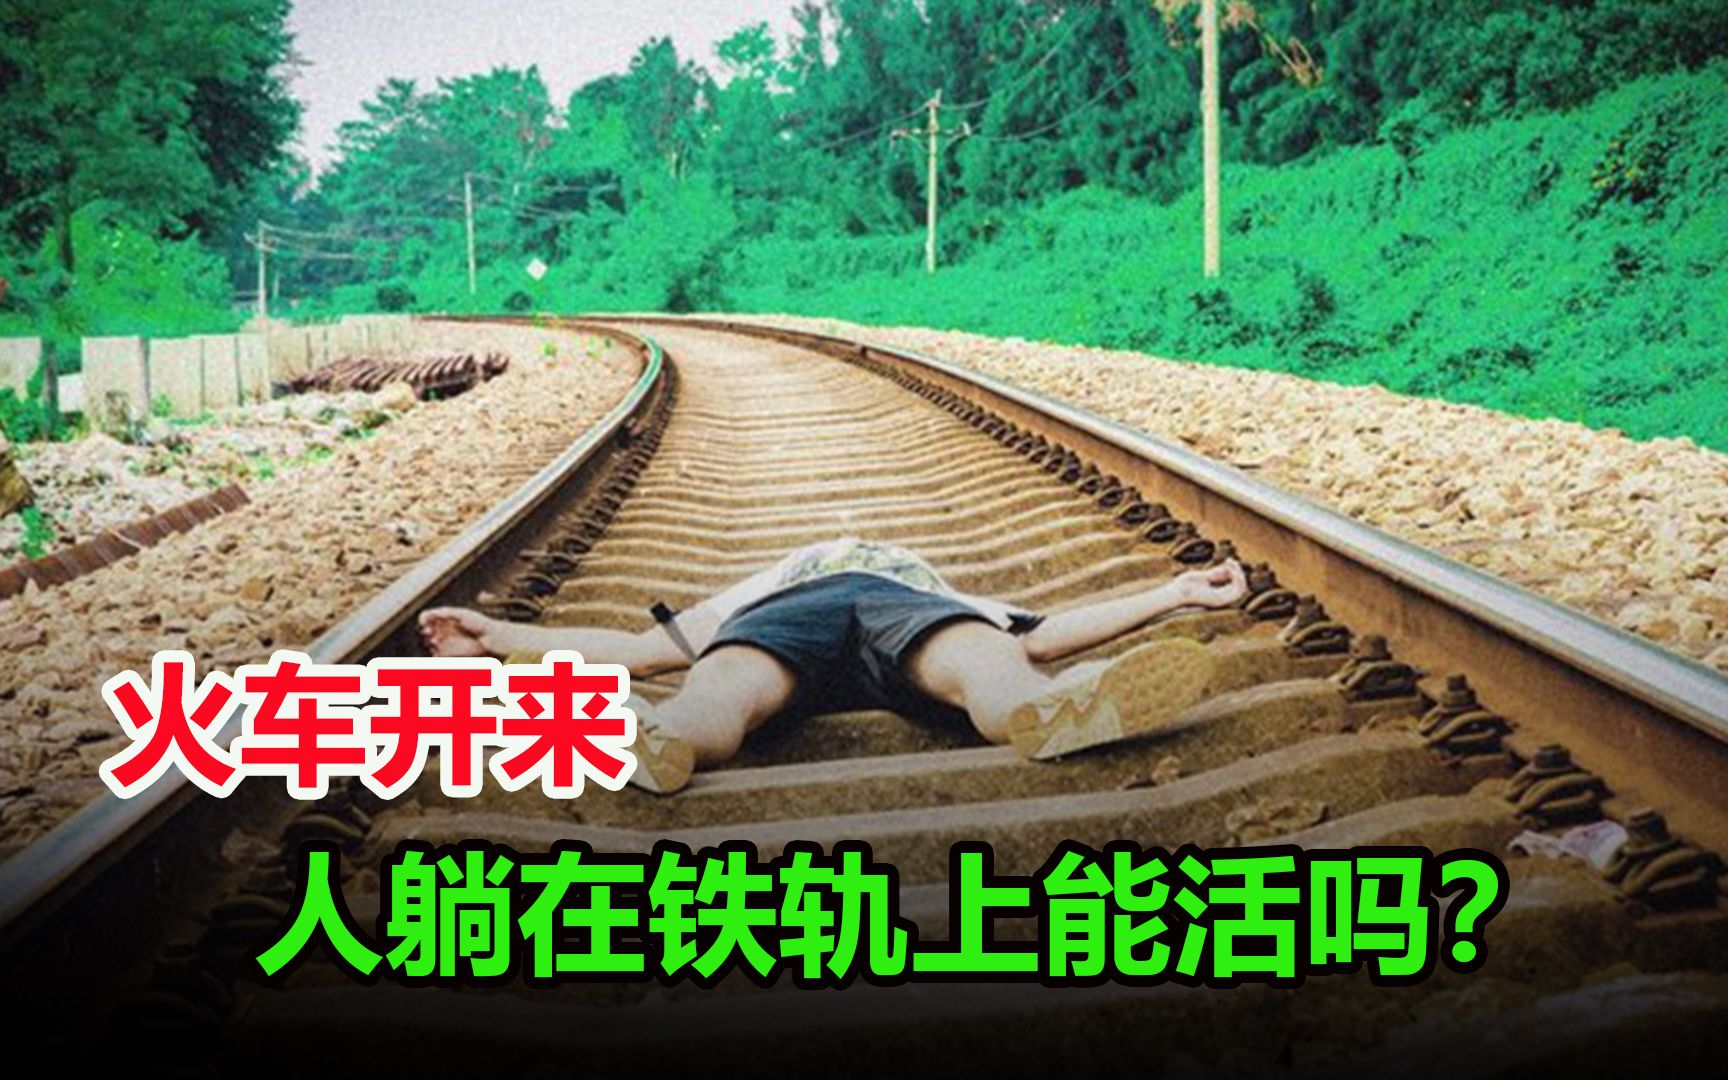 火车开过来时，人躺在铁轨上还能活命吗？看完终于解开疑惑了